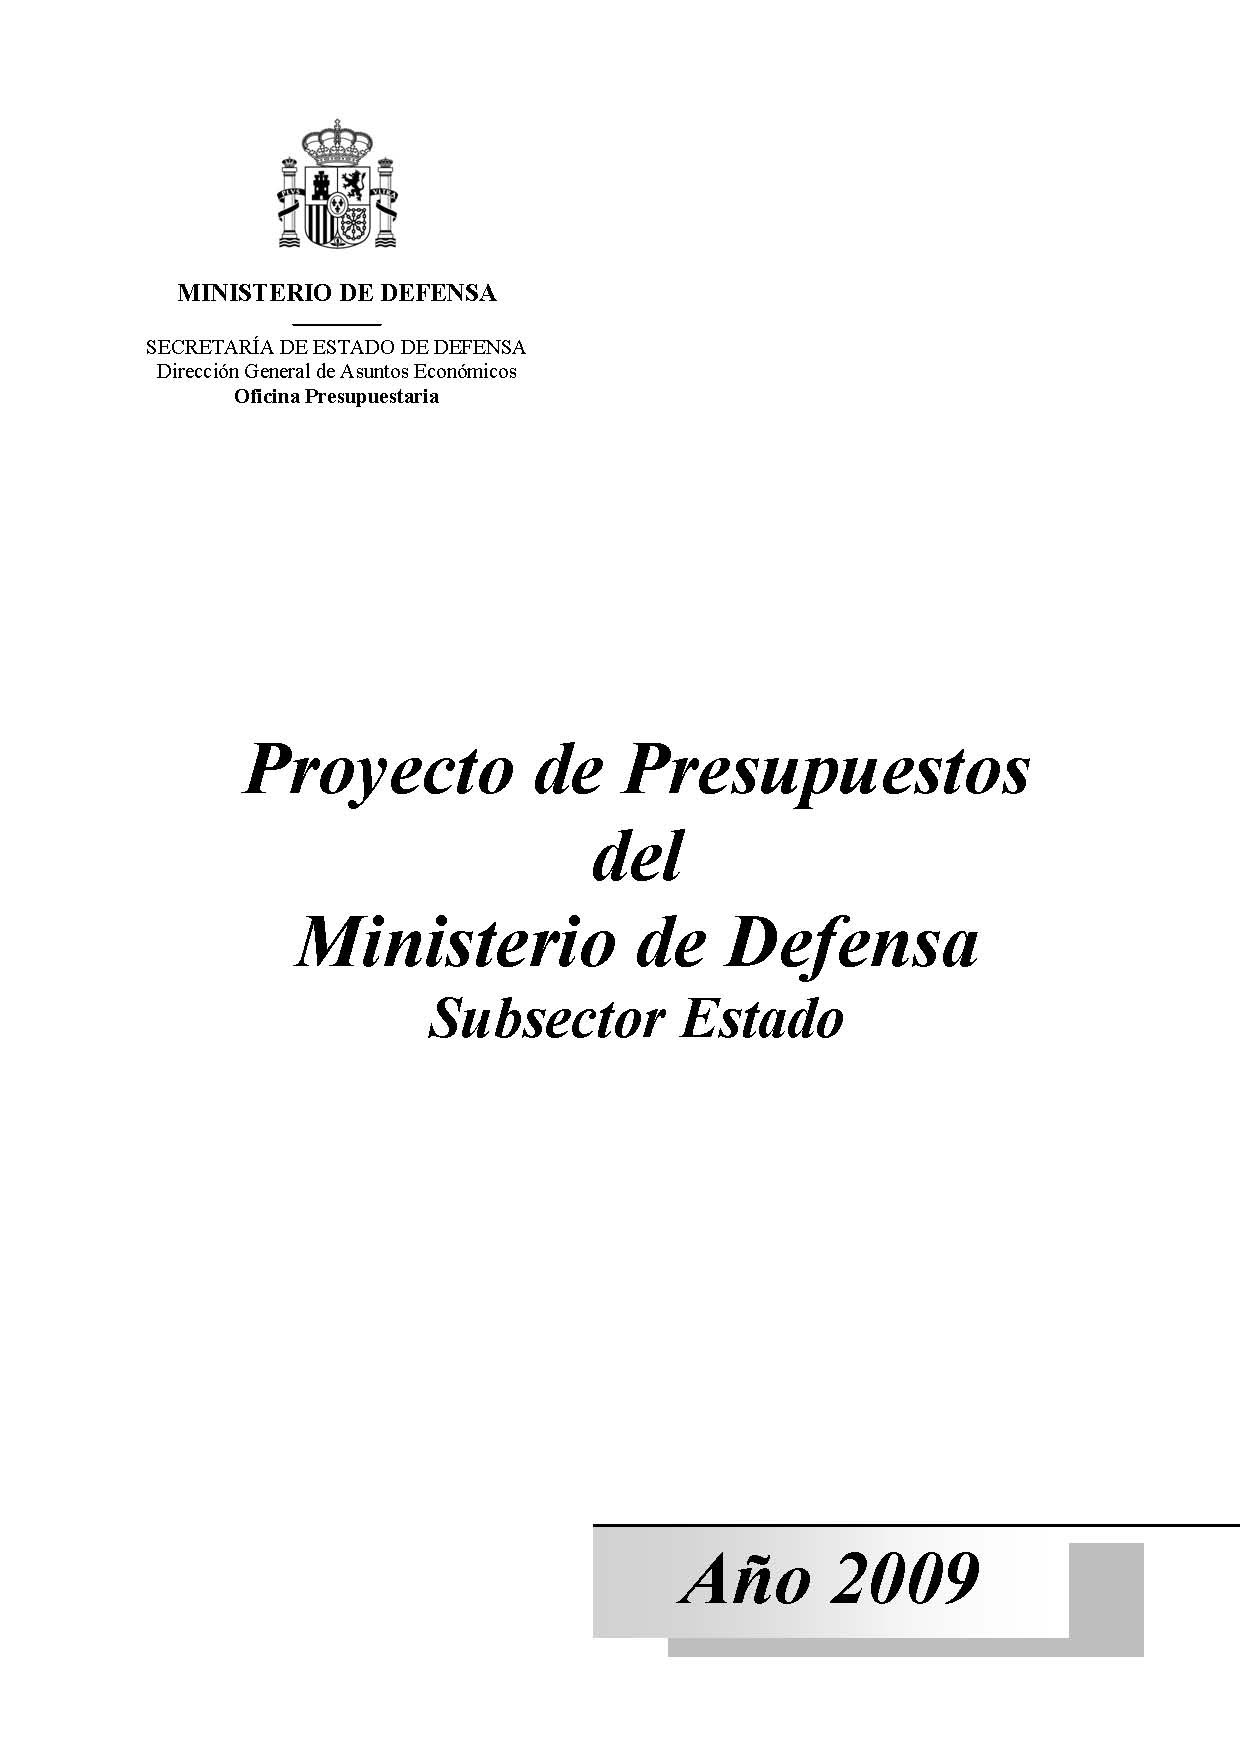 PROYECTO DE PRESUPUESTOS DEL MINISTERIO DE DEFENSA SUBSECTOR ESTADO. AÑO 2009